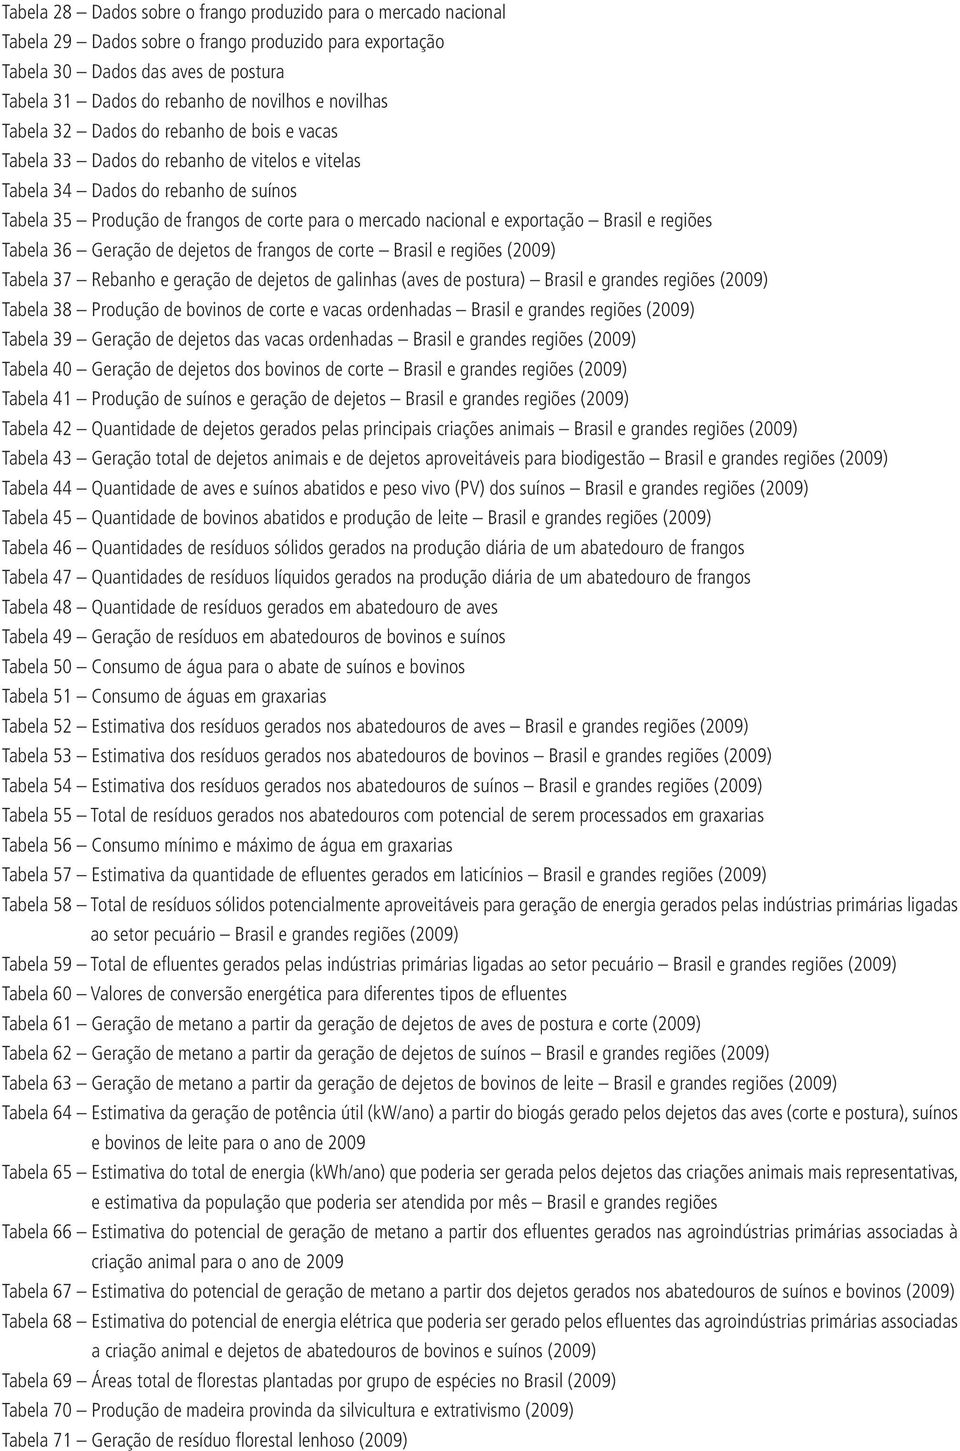 e exportação Brasil e regiões Tabela 36 Geração de dejetos de frangos de corte Brasil e regiões (2009) Tabela 37 Rebanho e geração de dejetos de galinhas (aves de postura) Brasil e grandes regiões